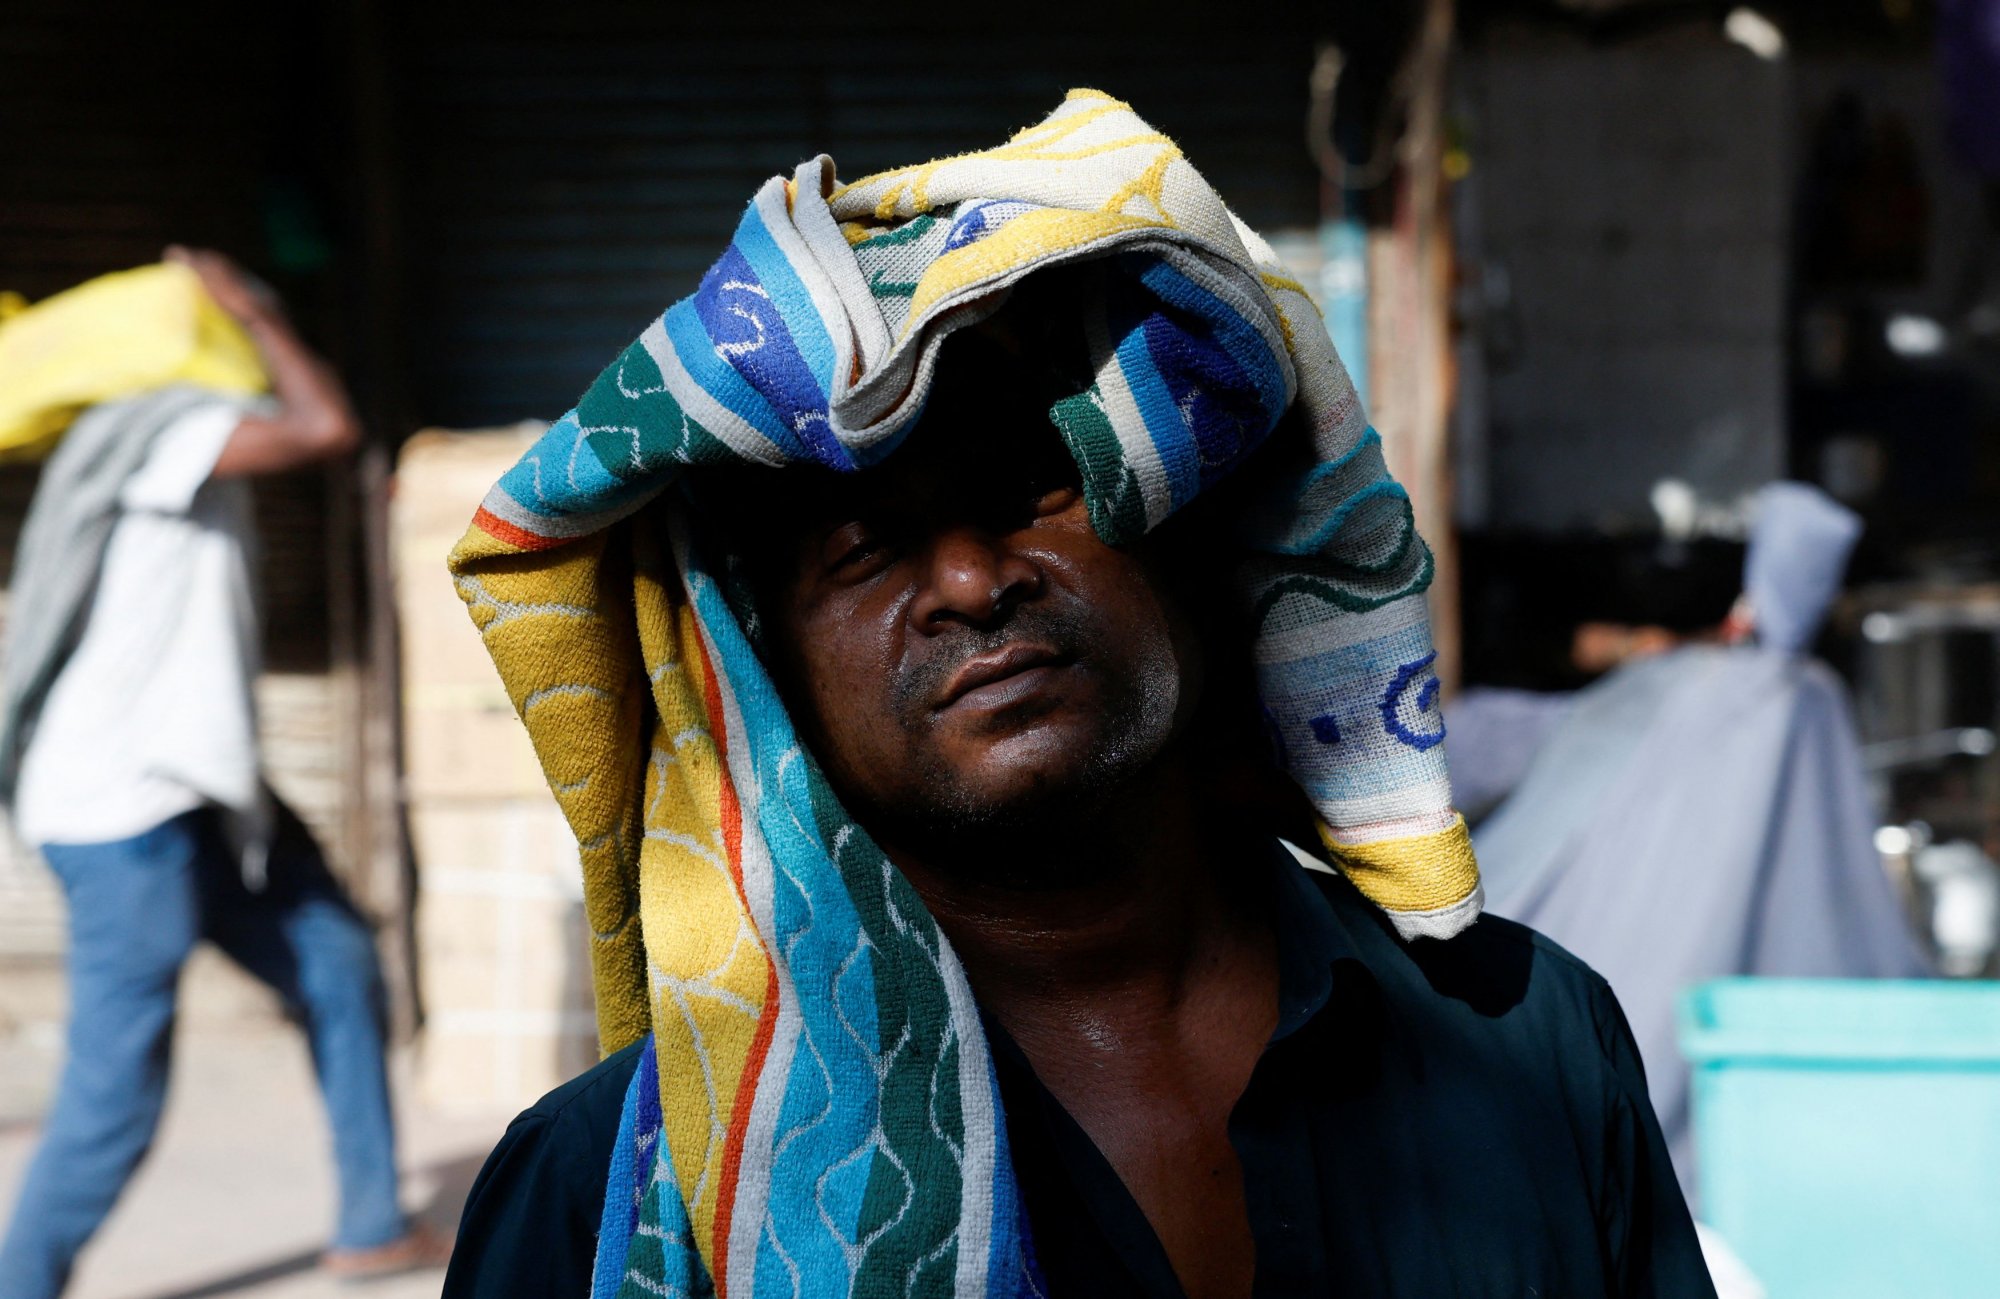 Ρεκόρ θερμοκρασίας στο Νέο Δελχί - Ενας νεκρός λόγω καύσωνα